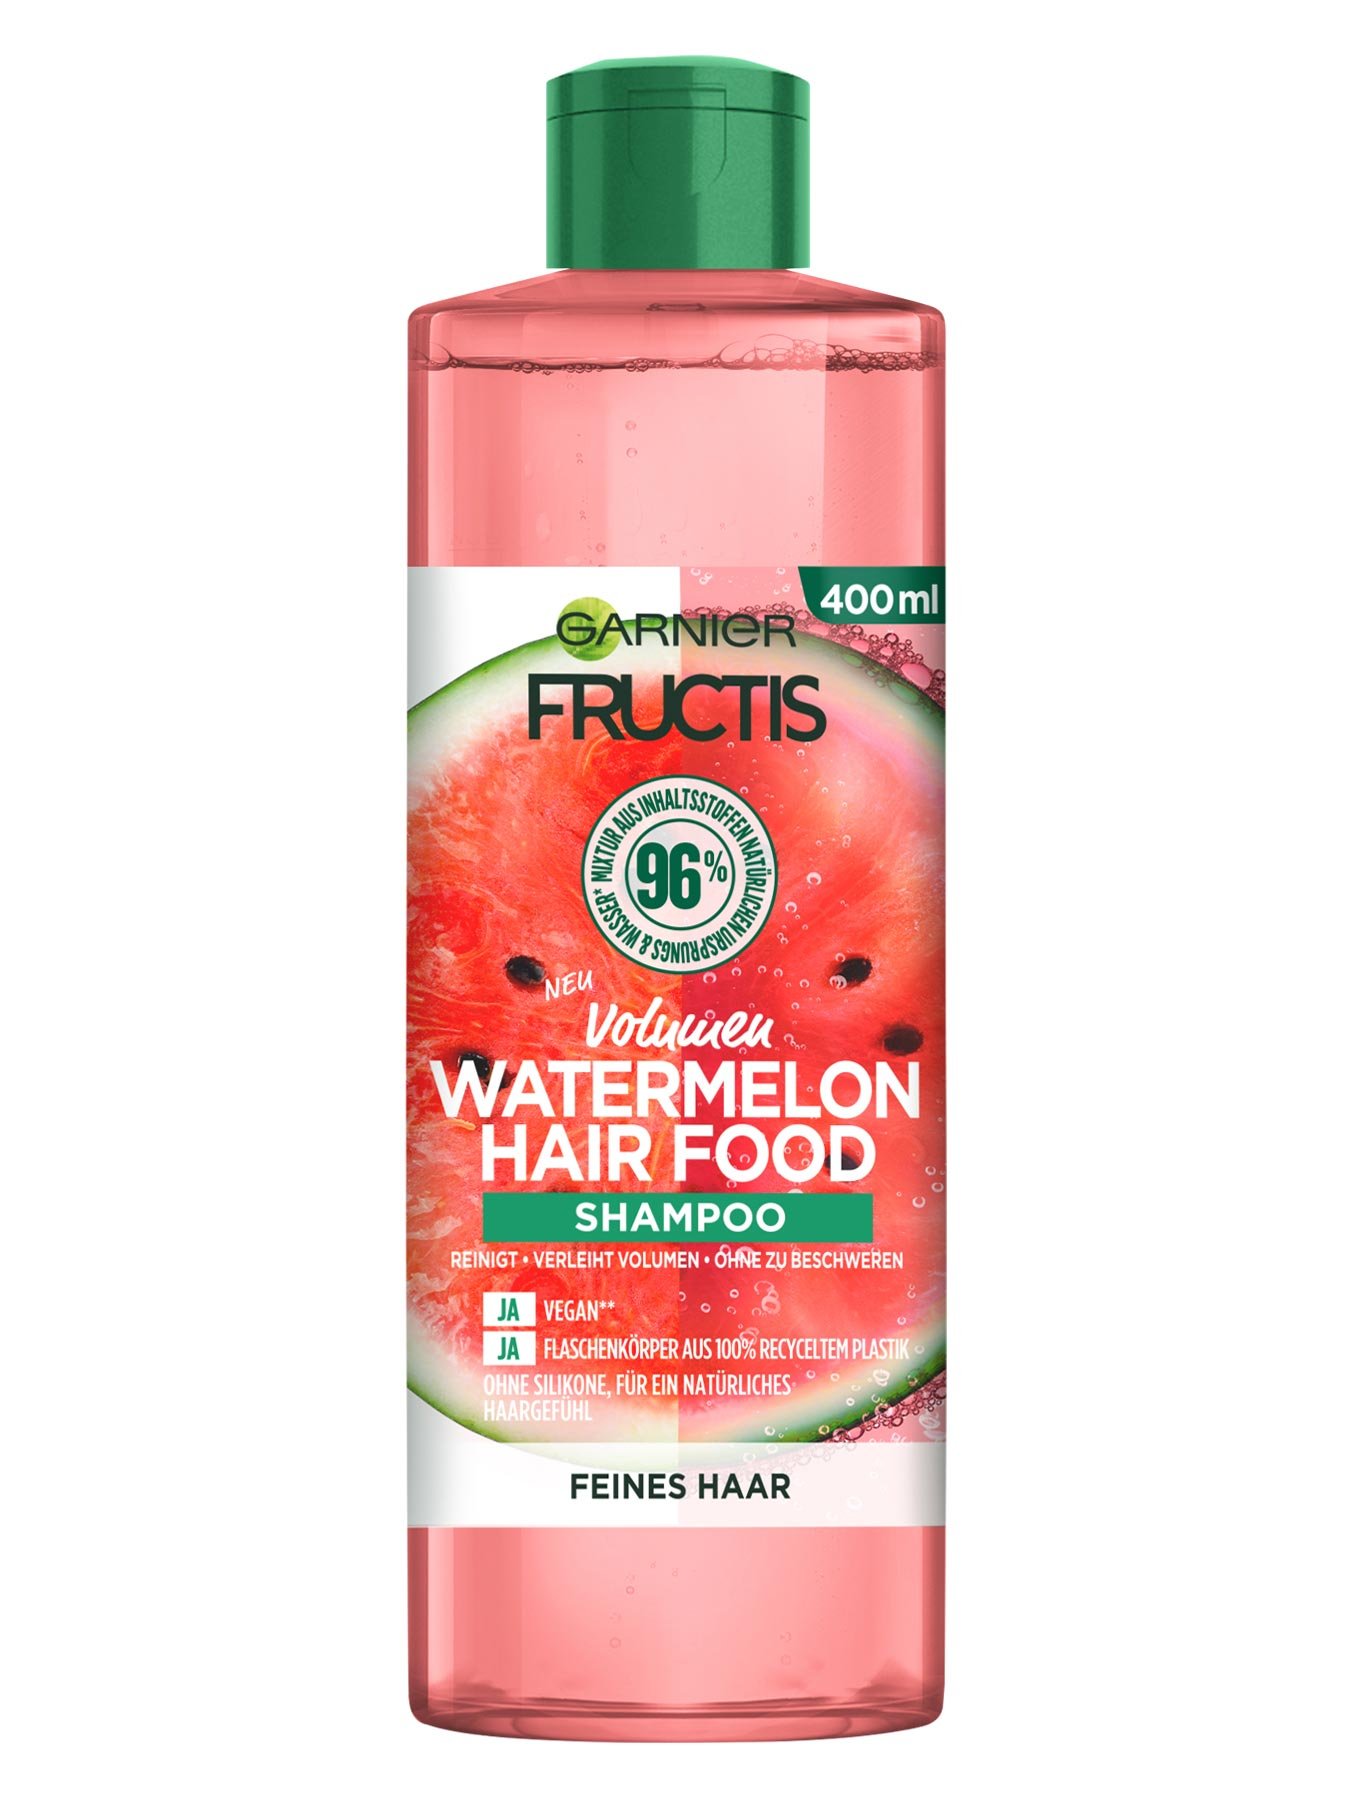 Fructis Hair Food Watermelon Shampoo Produktabbildung